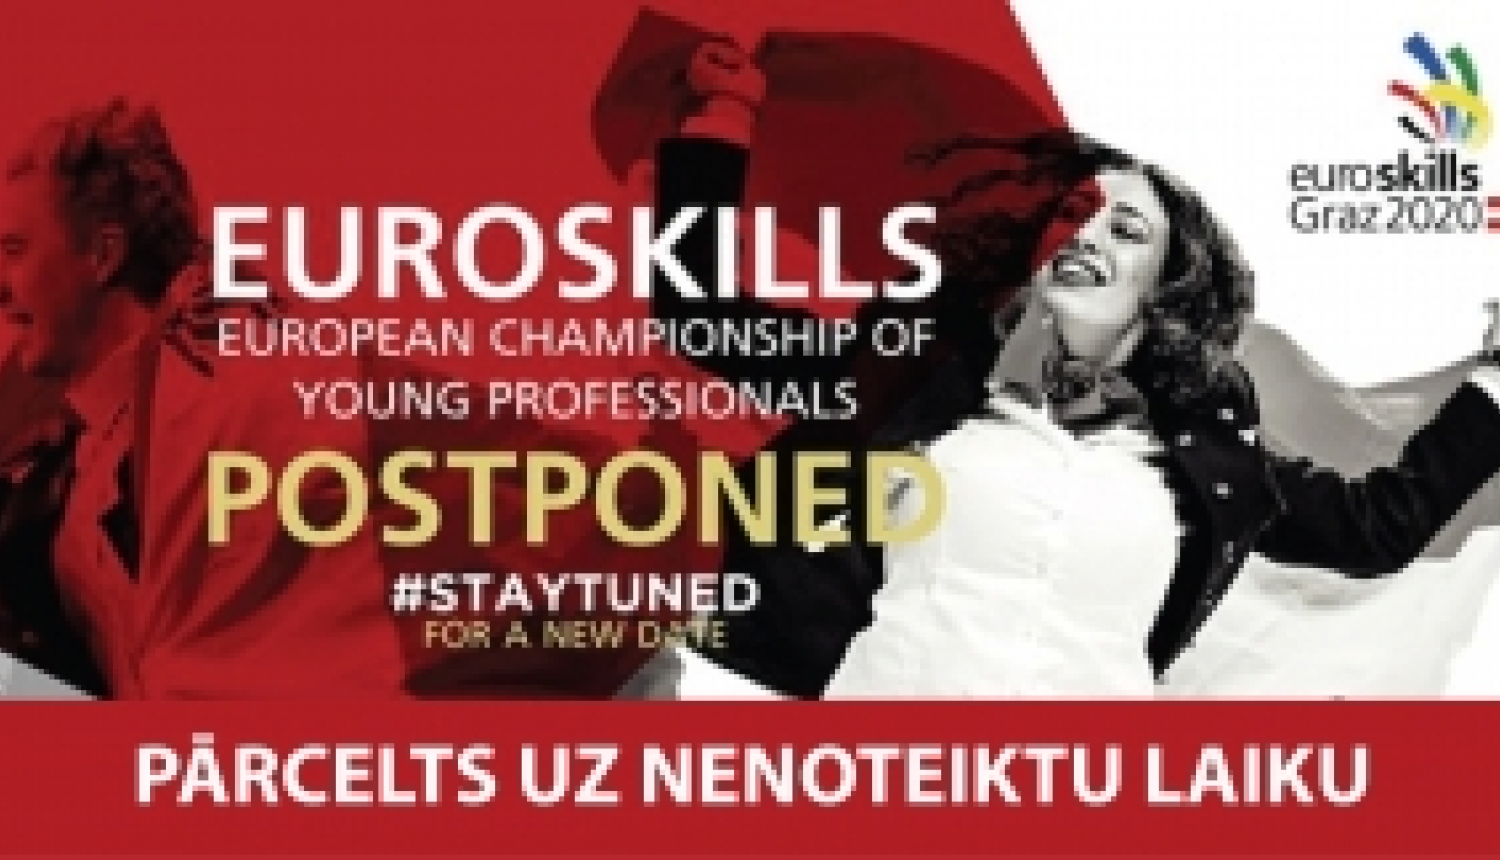 Starptautiskais konkurss EuroSkills2020 pārcelts uz nenoteiktu laiku